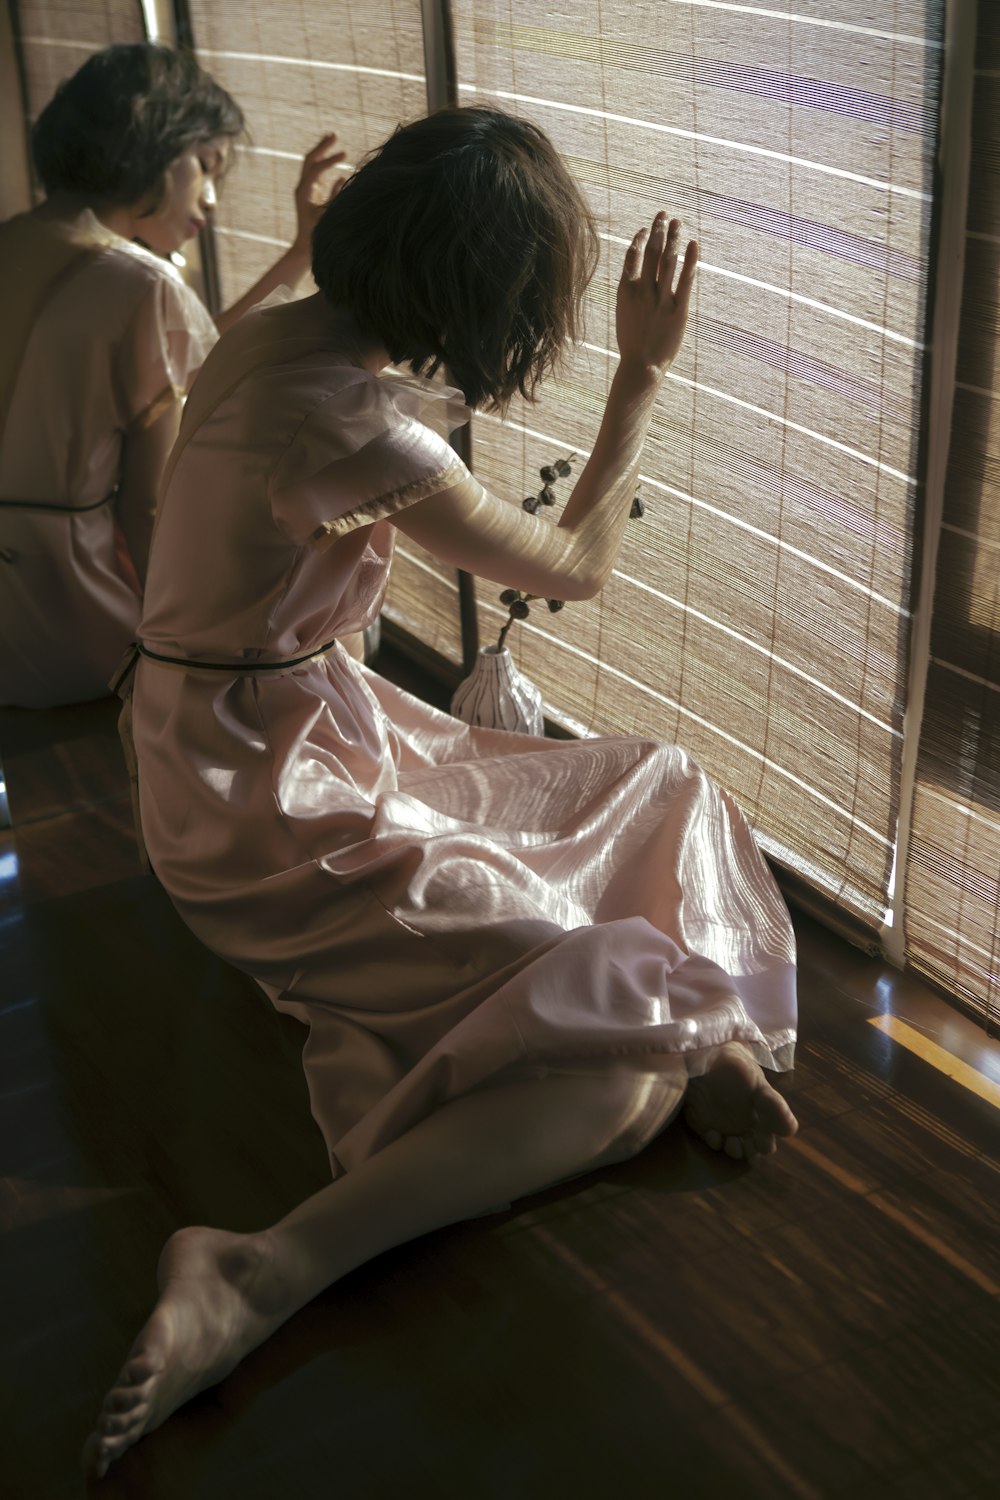 una donna seduta sul pavimento davanti a una finestra